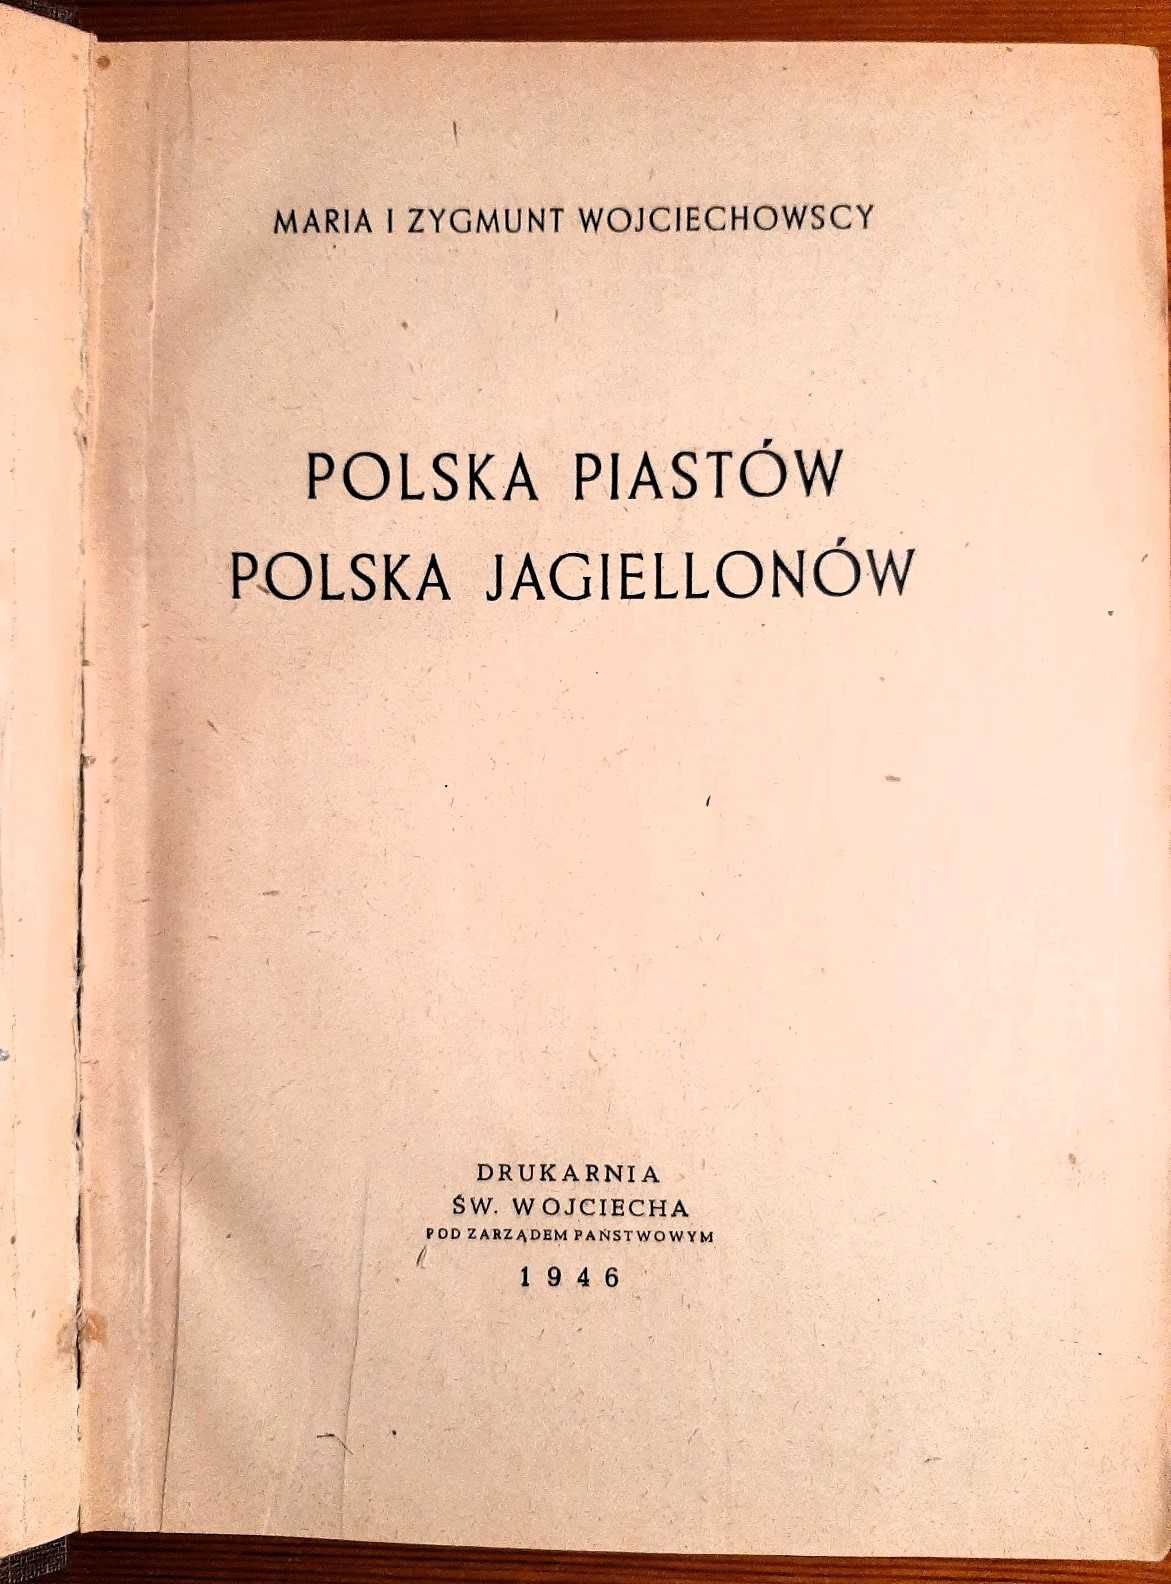 Polska Piastów Polska Jagiellonów – M. i Z. Wojciechowscy, 1946 r.